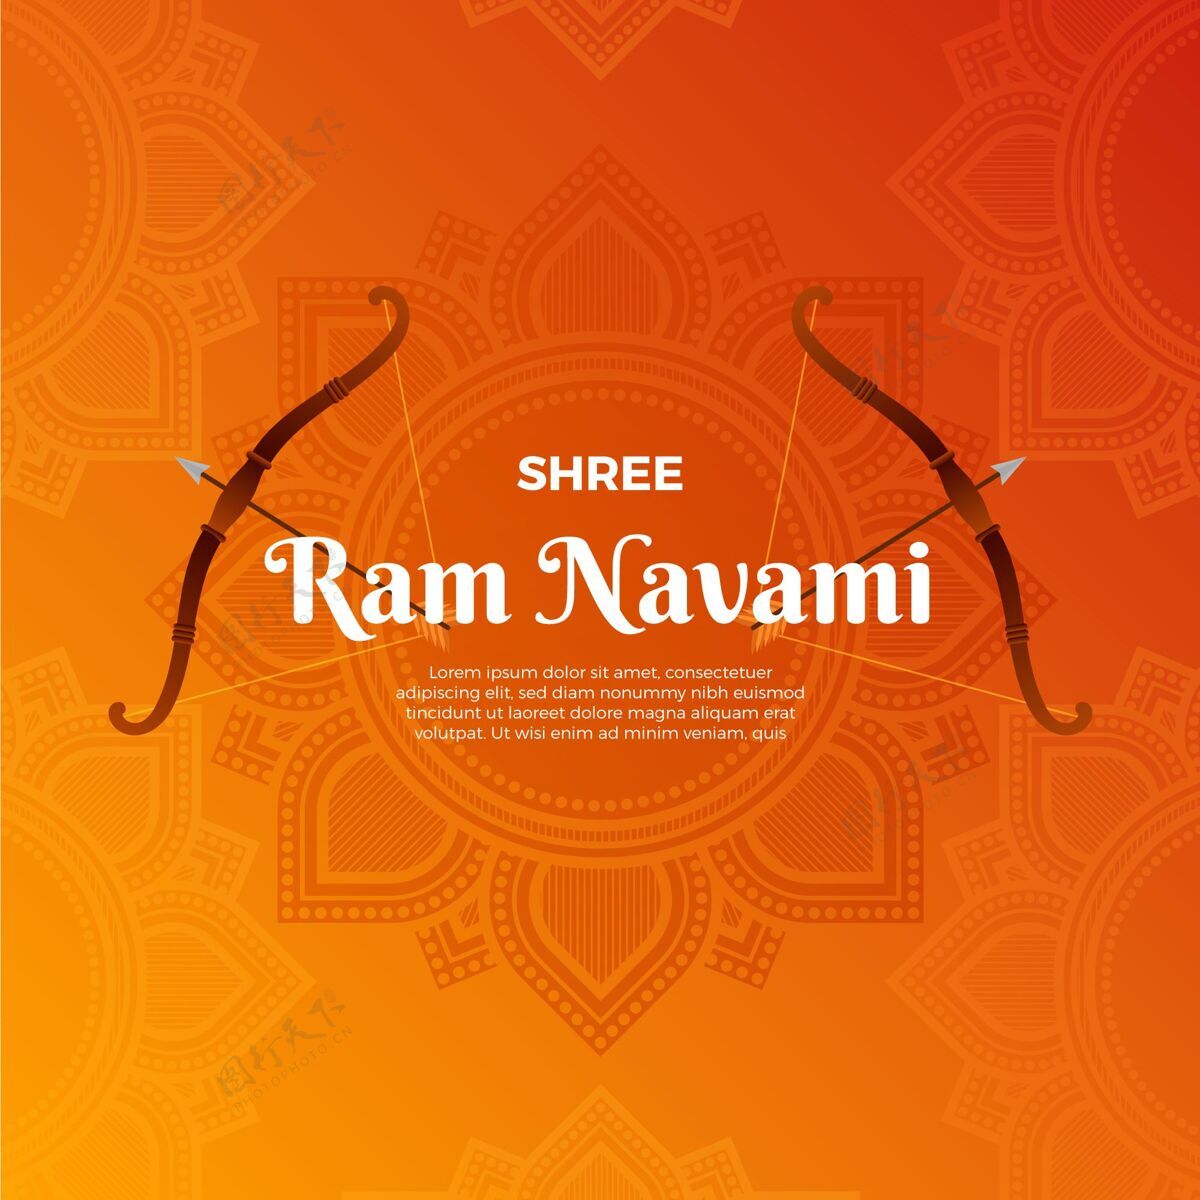 印度教神梯度ramnavami图解拉姆纳瓦米普贾节日